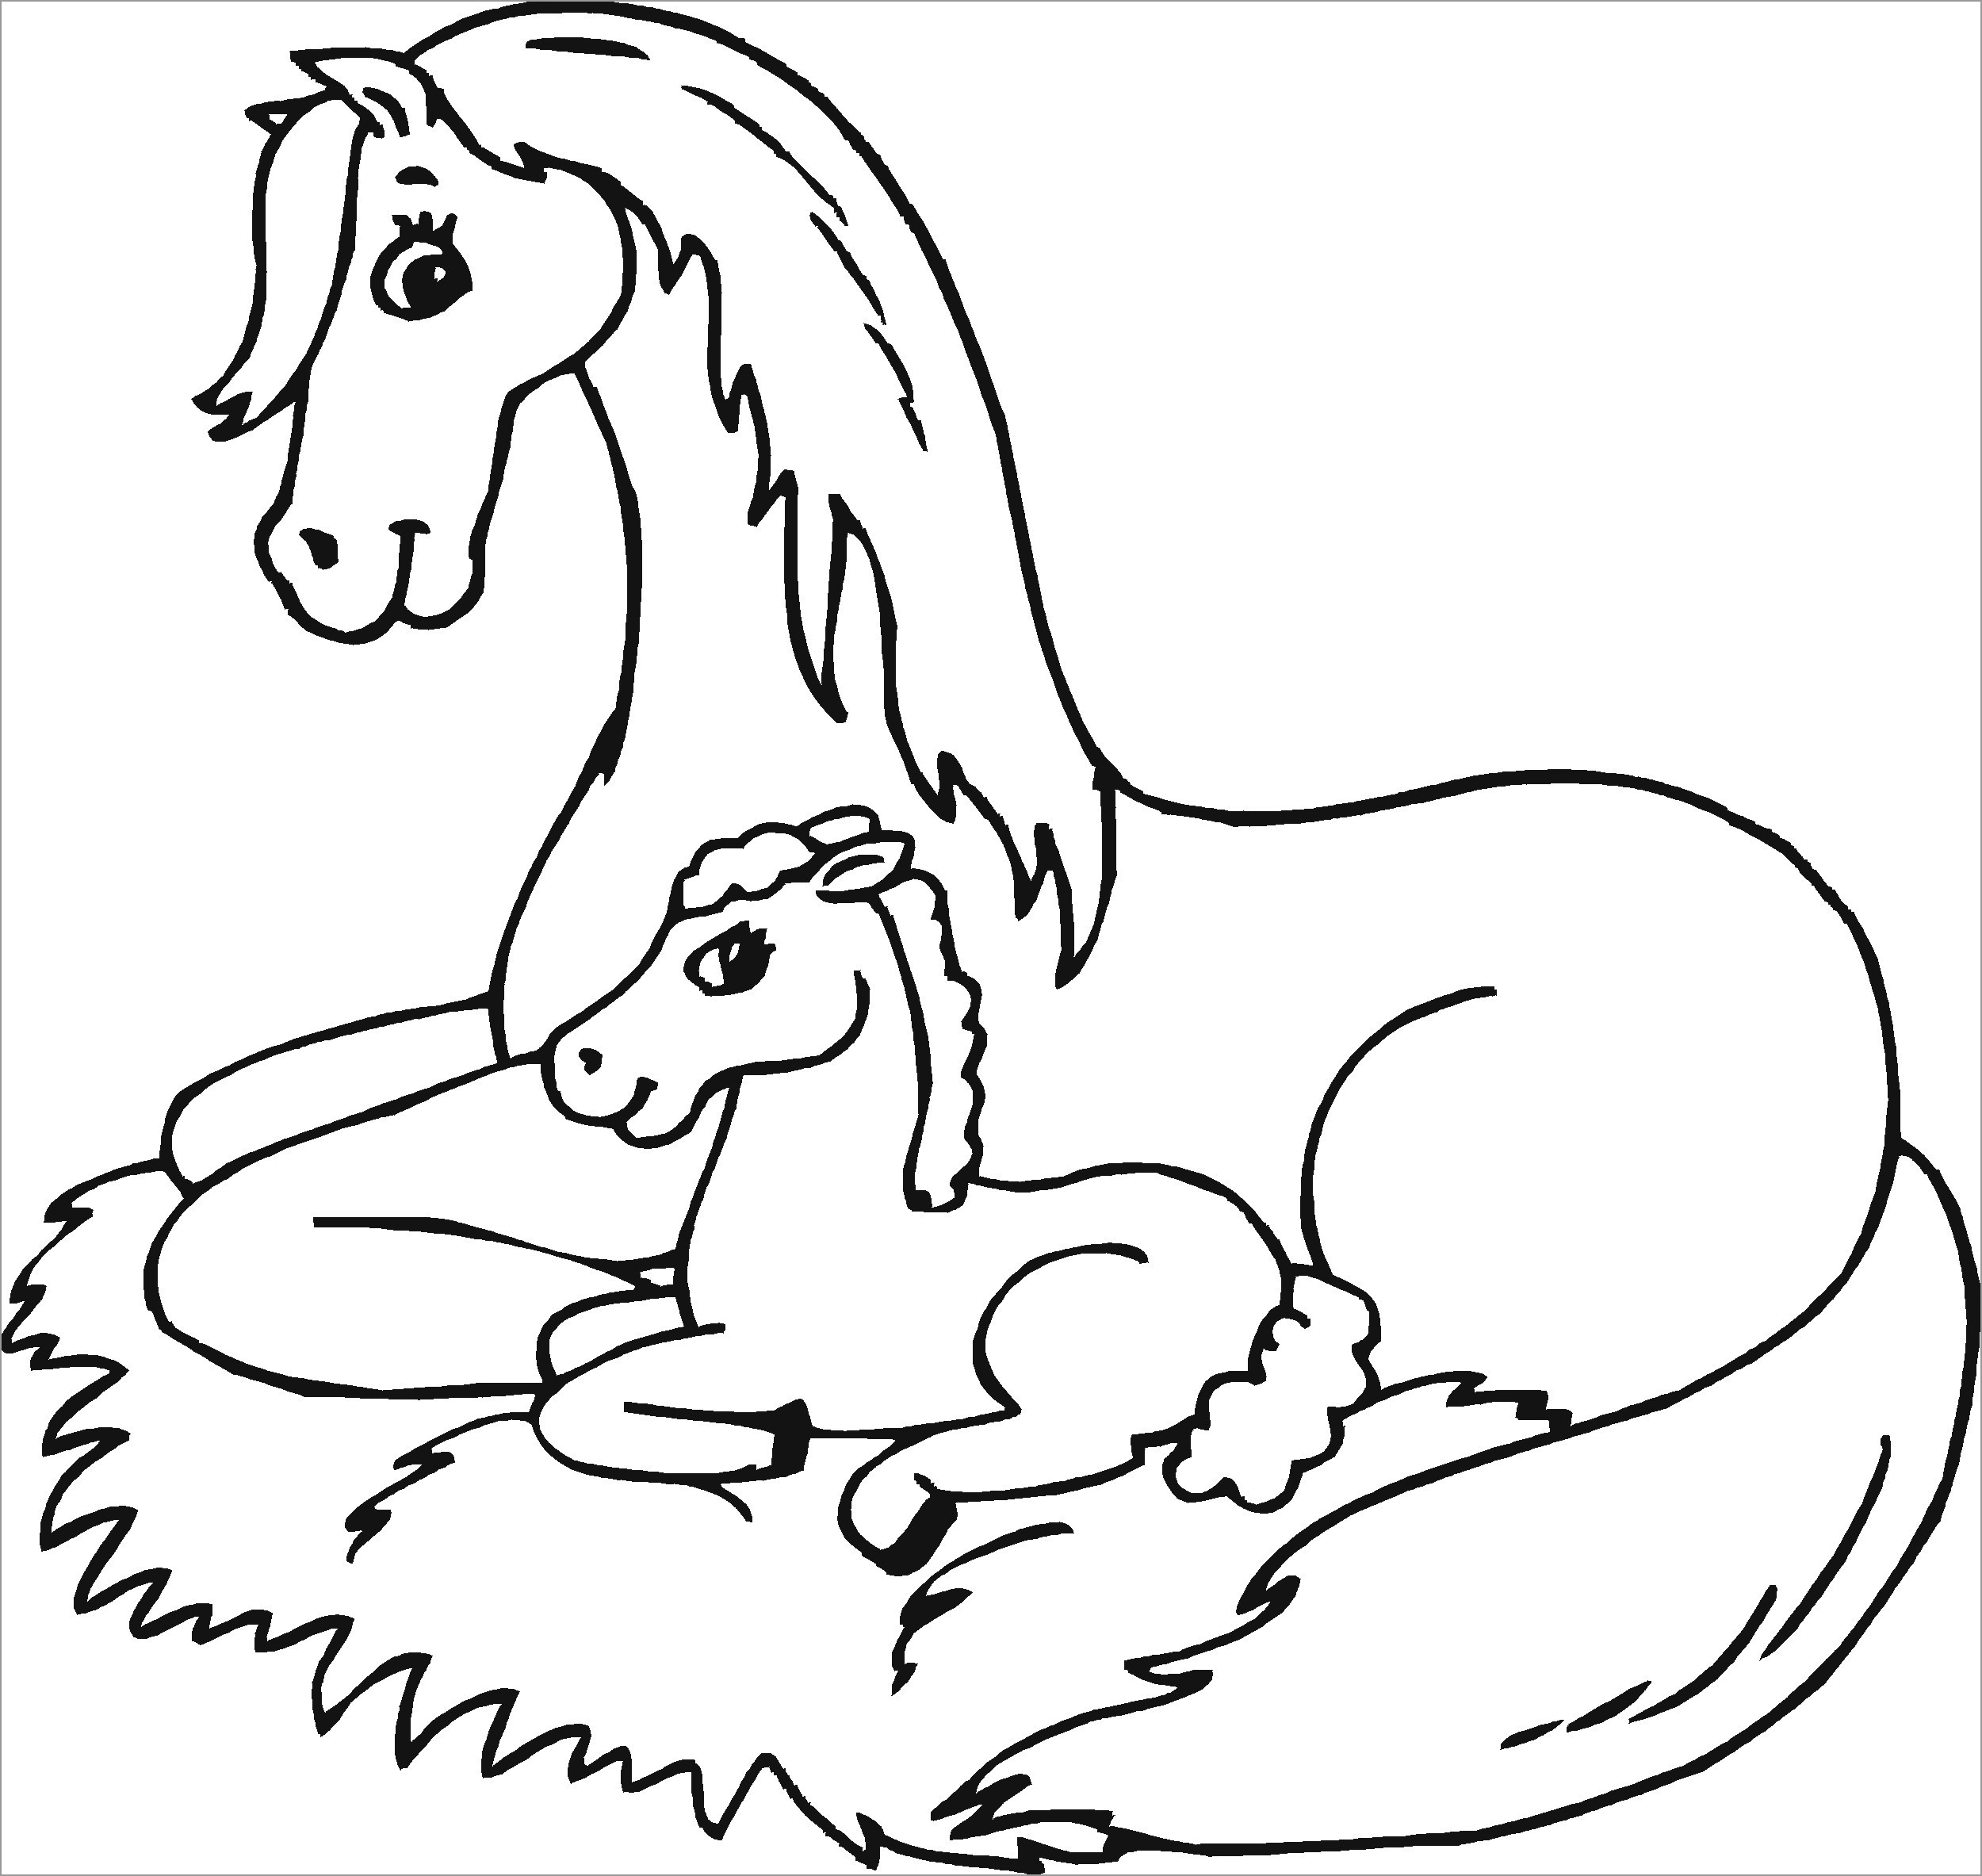 Раскрасить лошадку. Раскраска. Лошадка. Лошадь раскраска для детей. Лошадь раскраска для малышей. Раскраски лошадки для девочек.